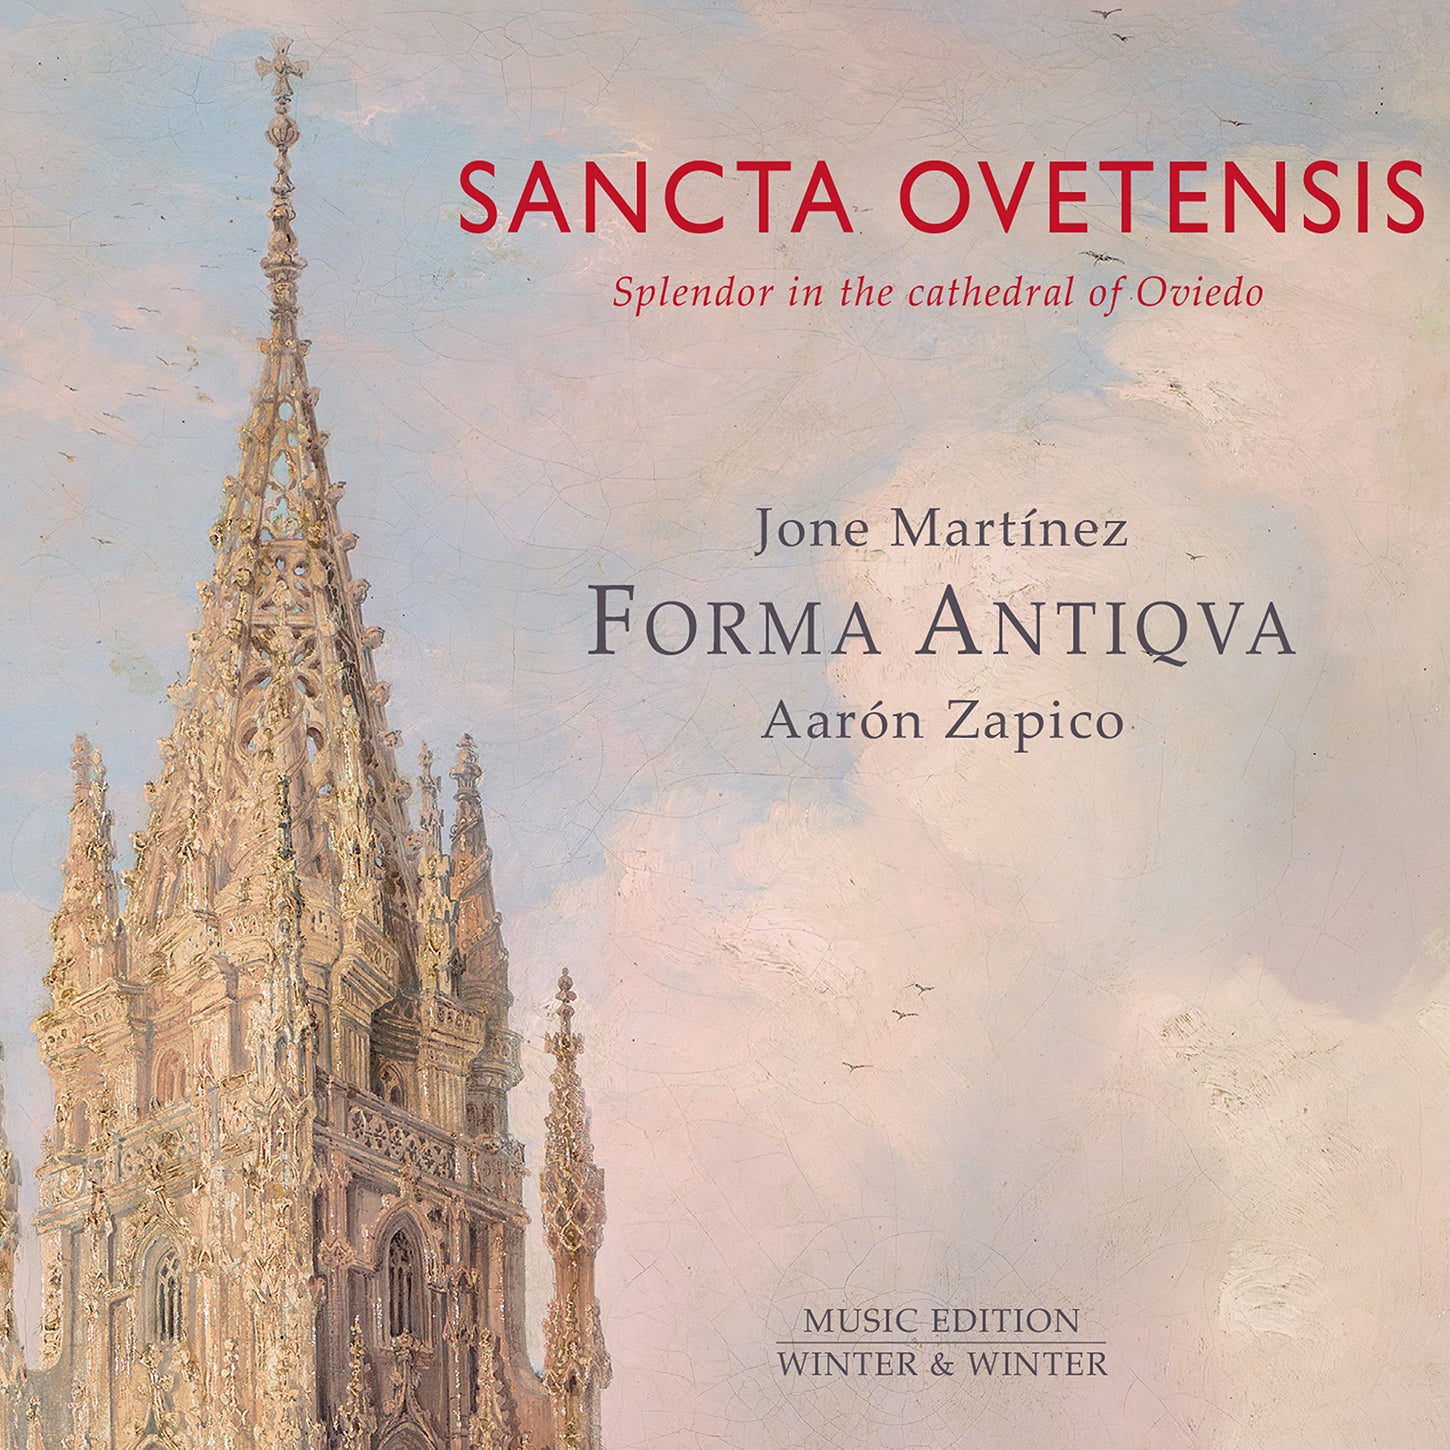 Sancta Ovetensis: Splendor in Oviedo / Zapico, Forma Antiqva